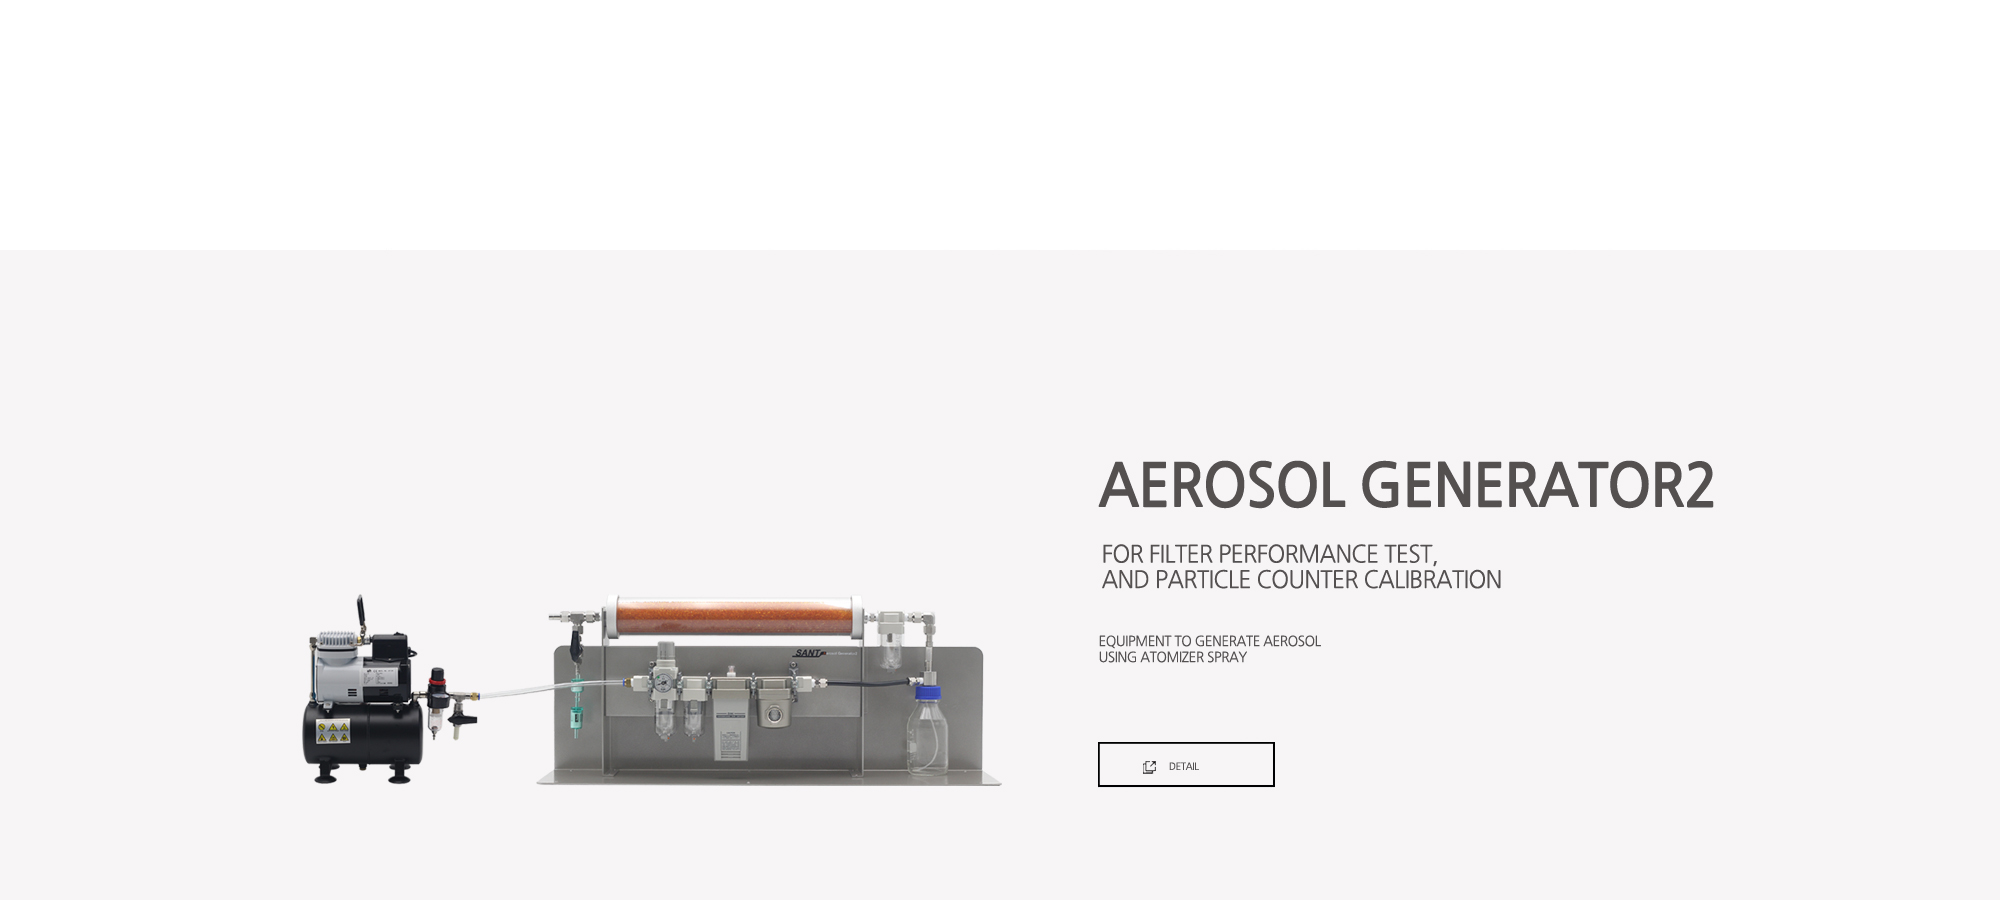 #AerosolGenerator2_en